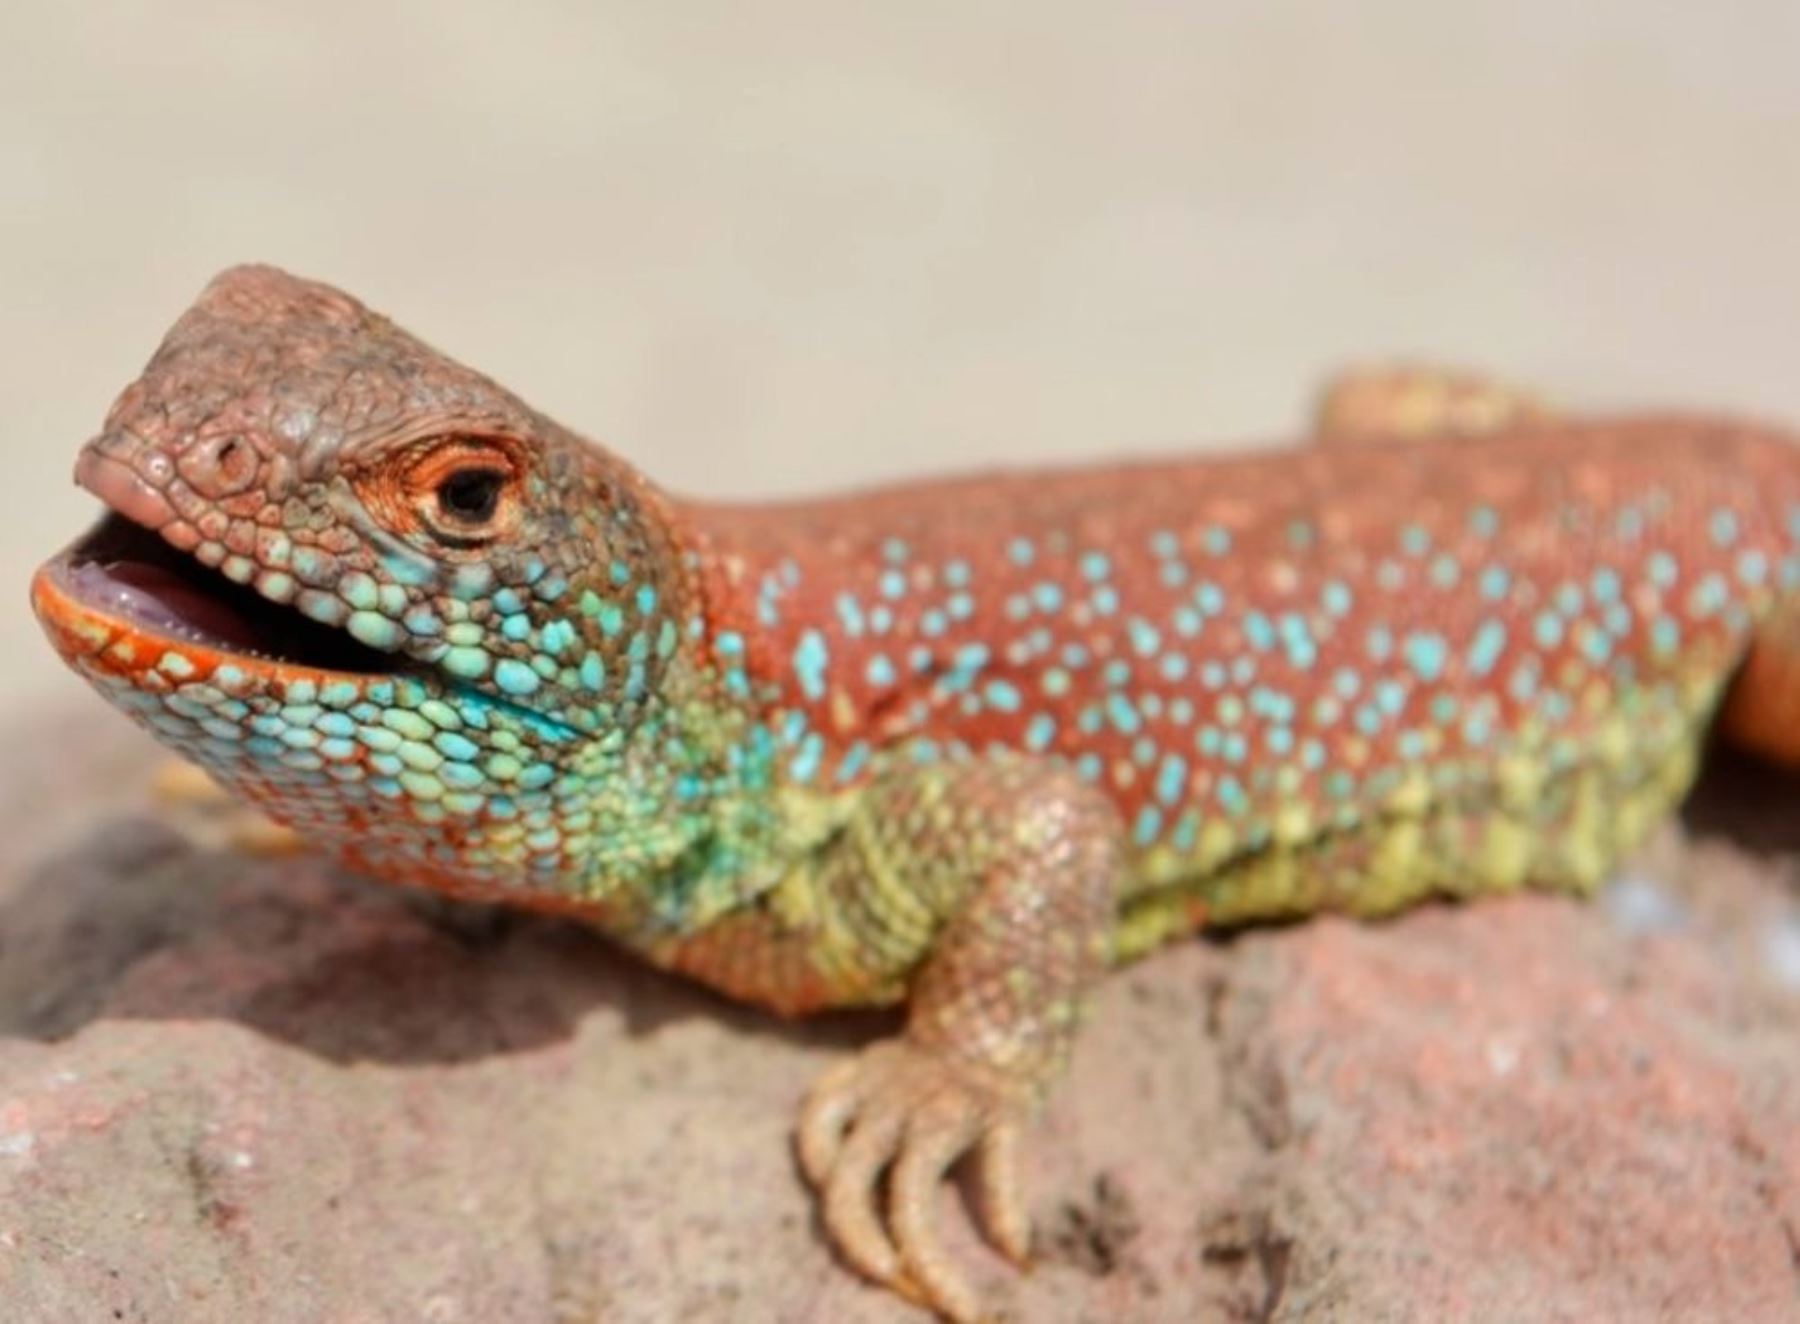 La nueva especie de lagarto hallada en Tacna fue bautizada con el nombre de Liolaemus basadrei,  en homenaje al gran historiador tacneño Jorge Basadre Grohmann.